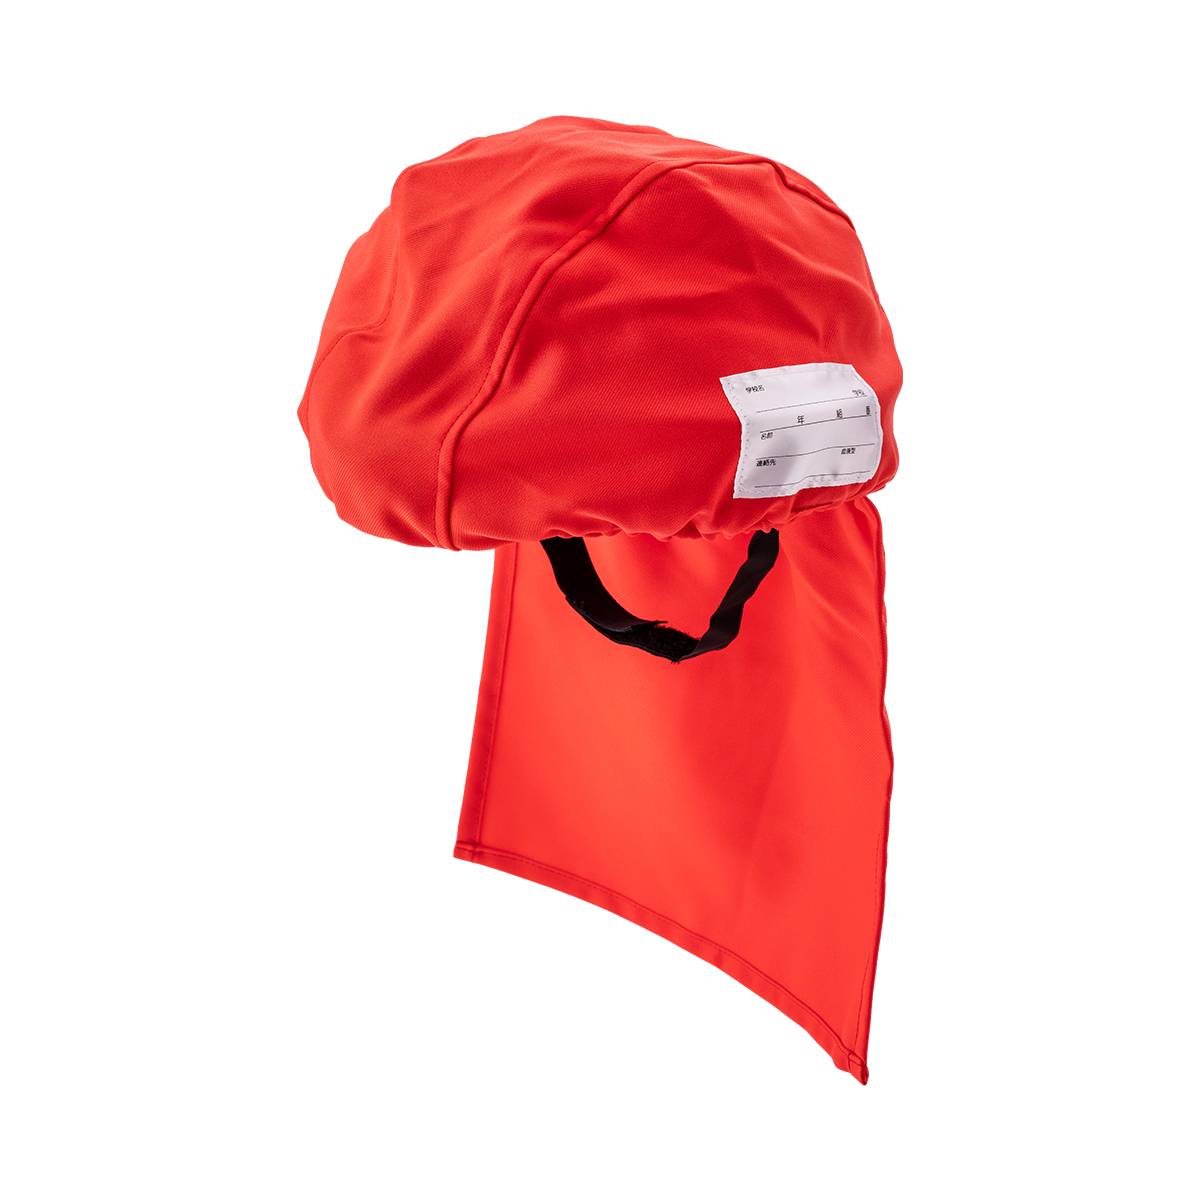 でるキャップ for kids 【レッド】 タイカ 避難用簡易保護帽